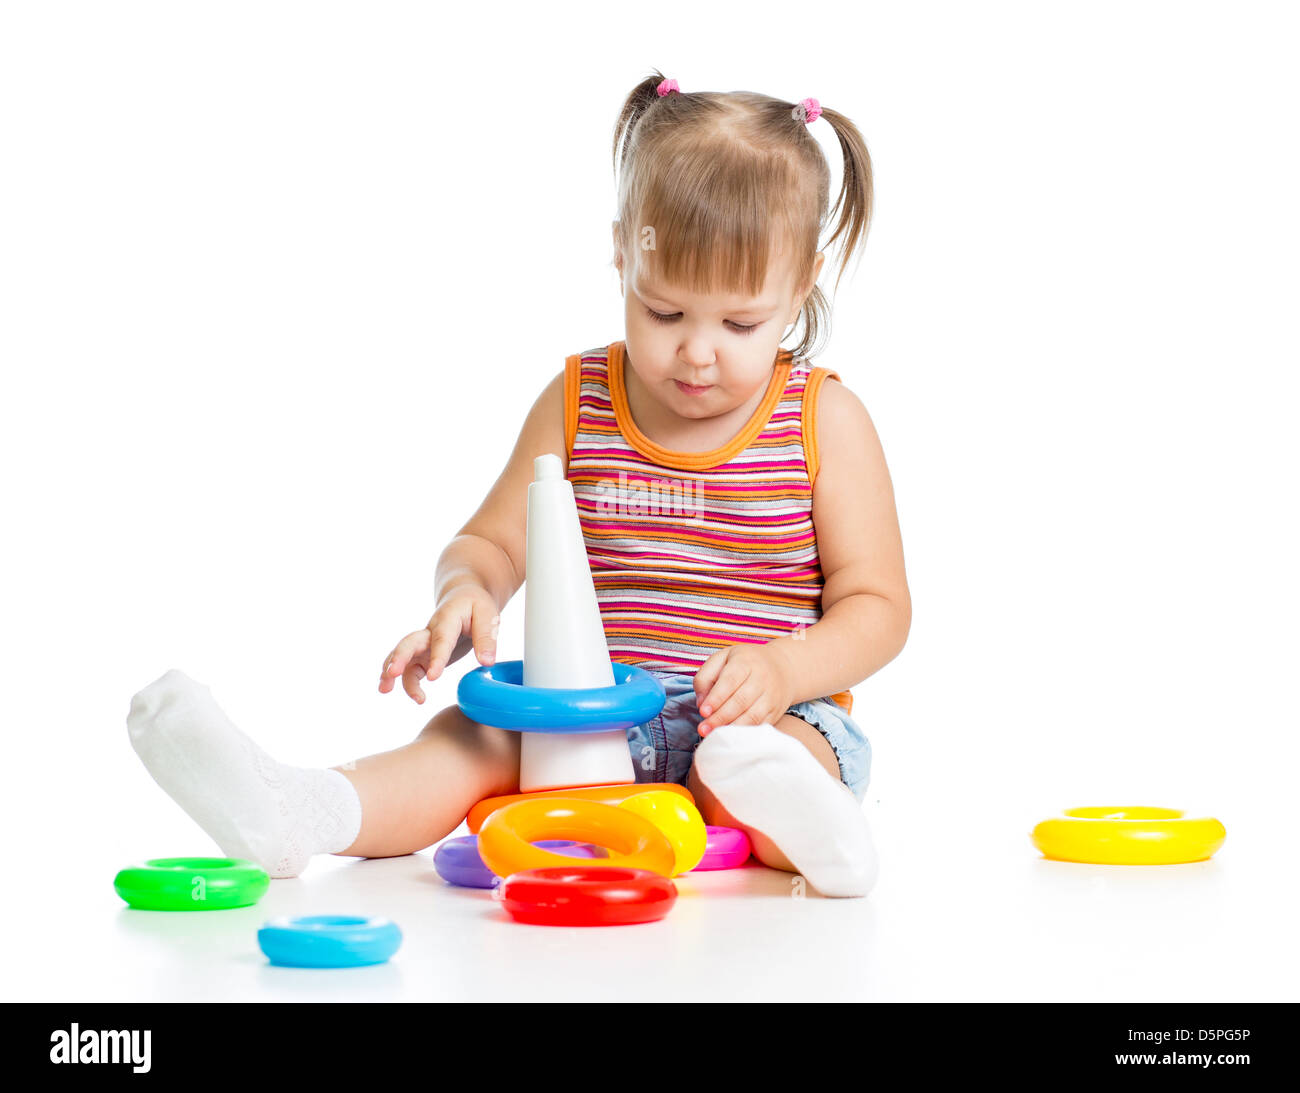 kleines Kind mit bunten Spielzeug, isoliert auf weiß Stockfoto